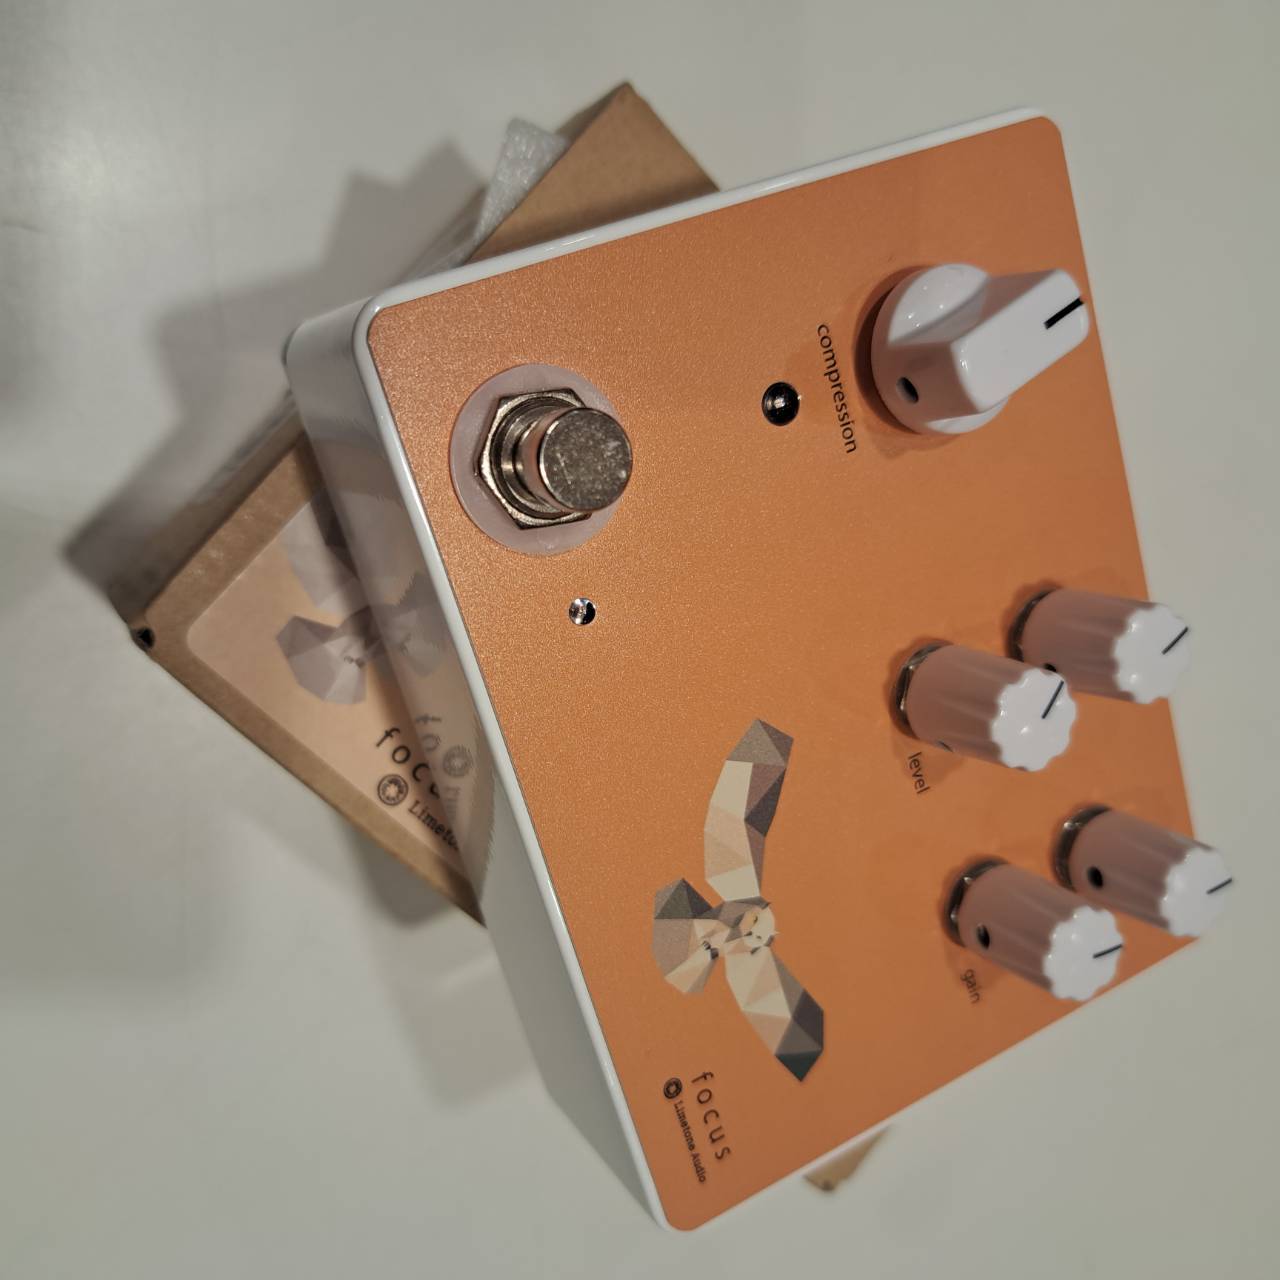 Limetone Audio 中古focus orange（中古/送料無料）【楽器検索デジマート】